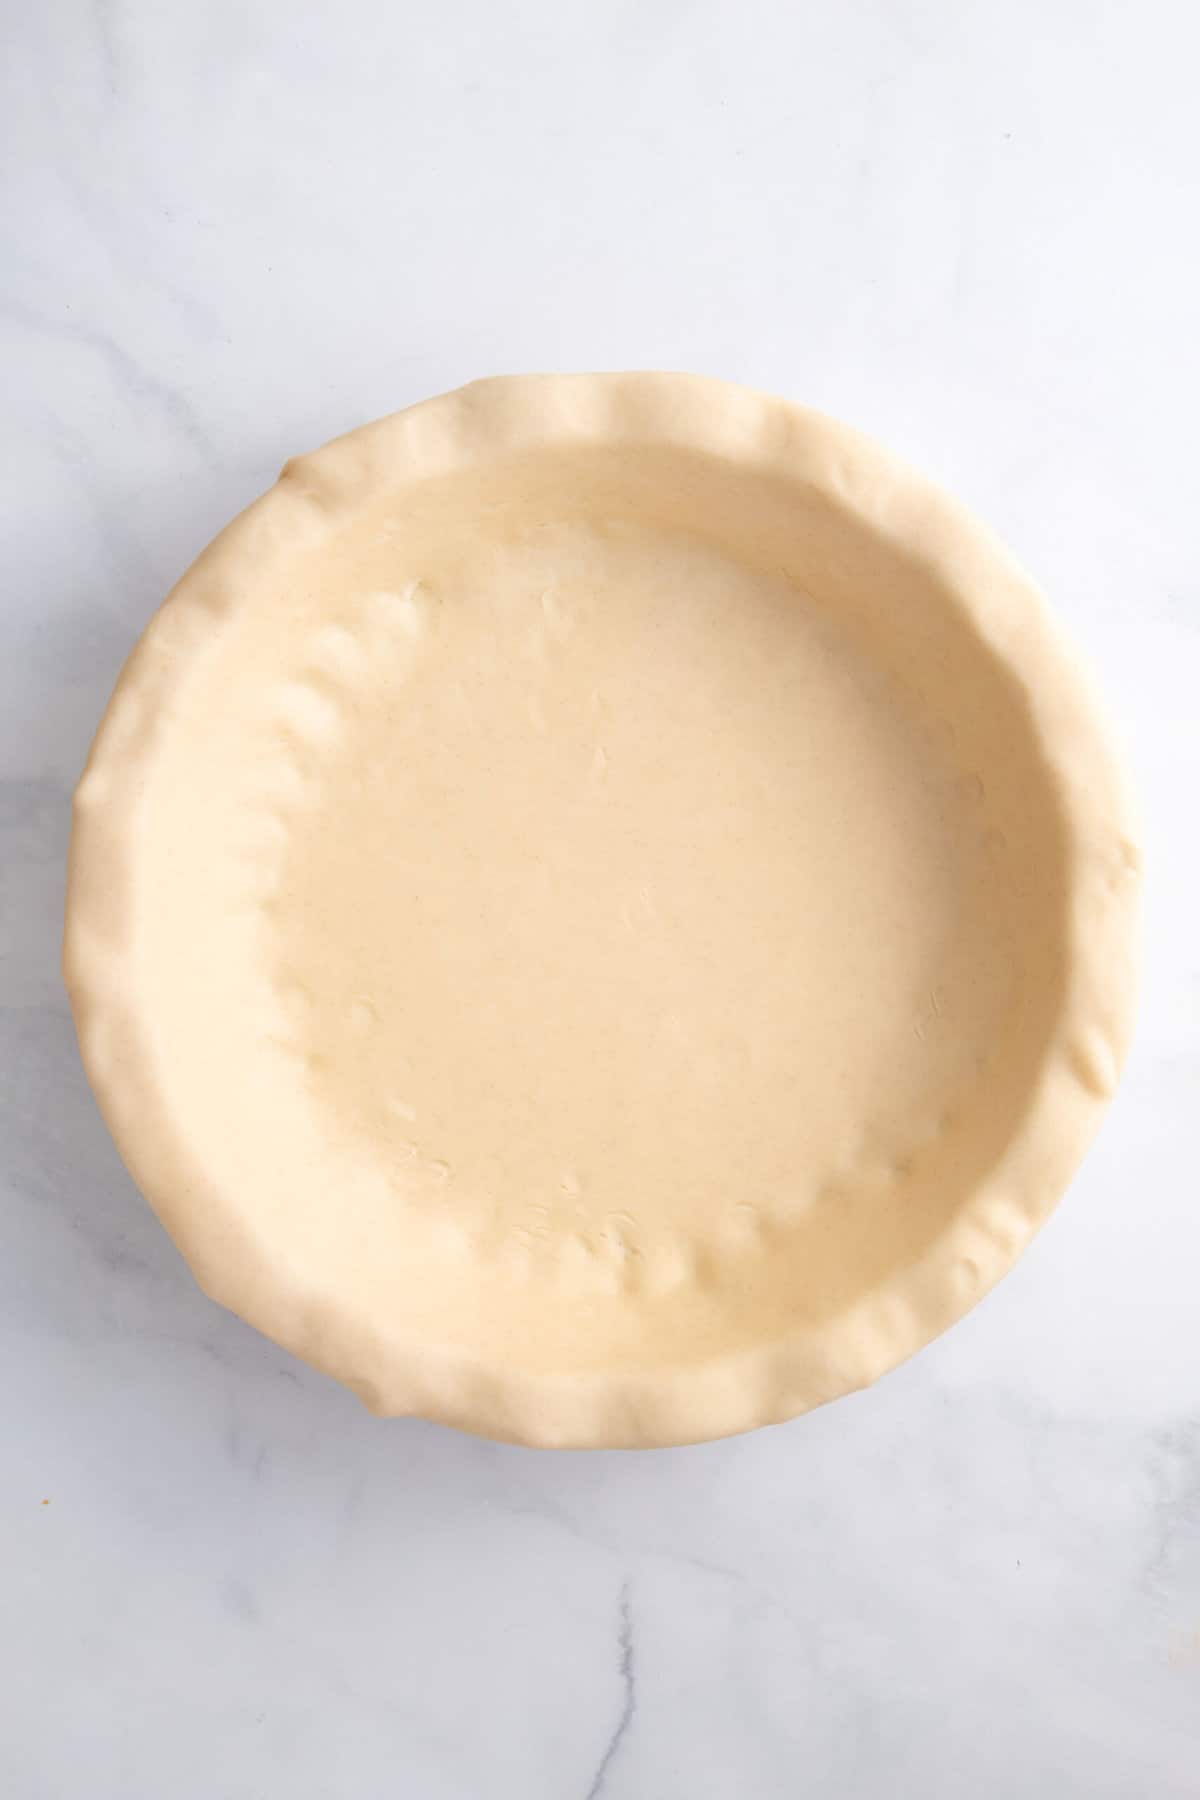 prepared pie crust in a pie dish